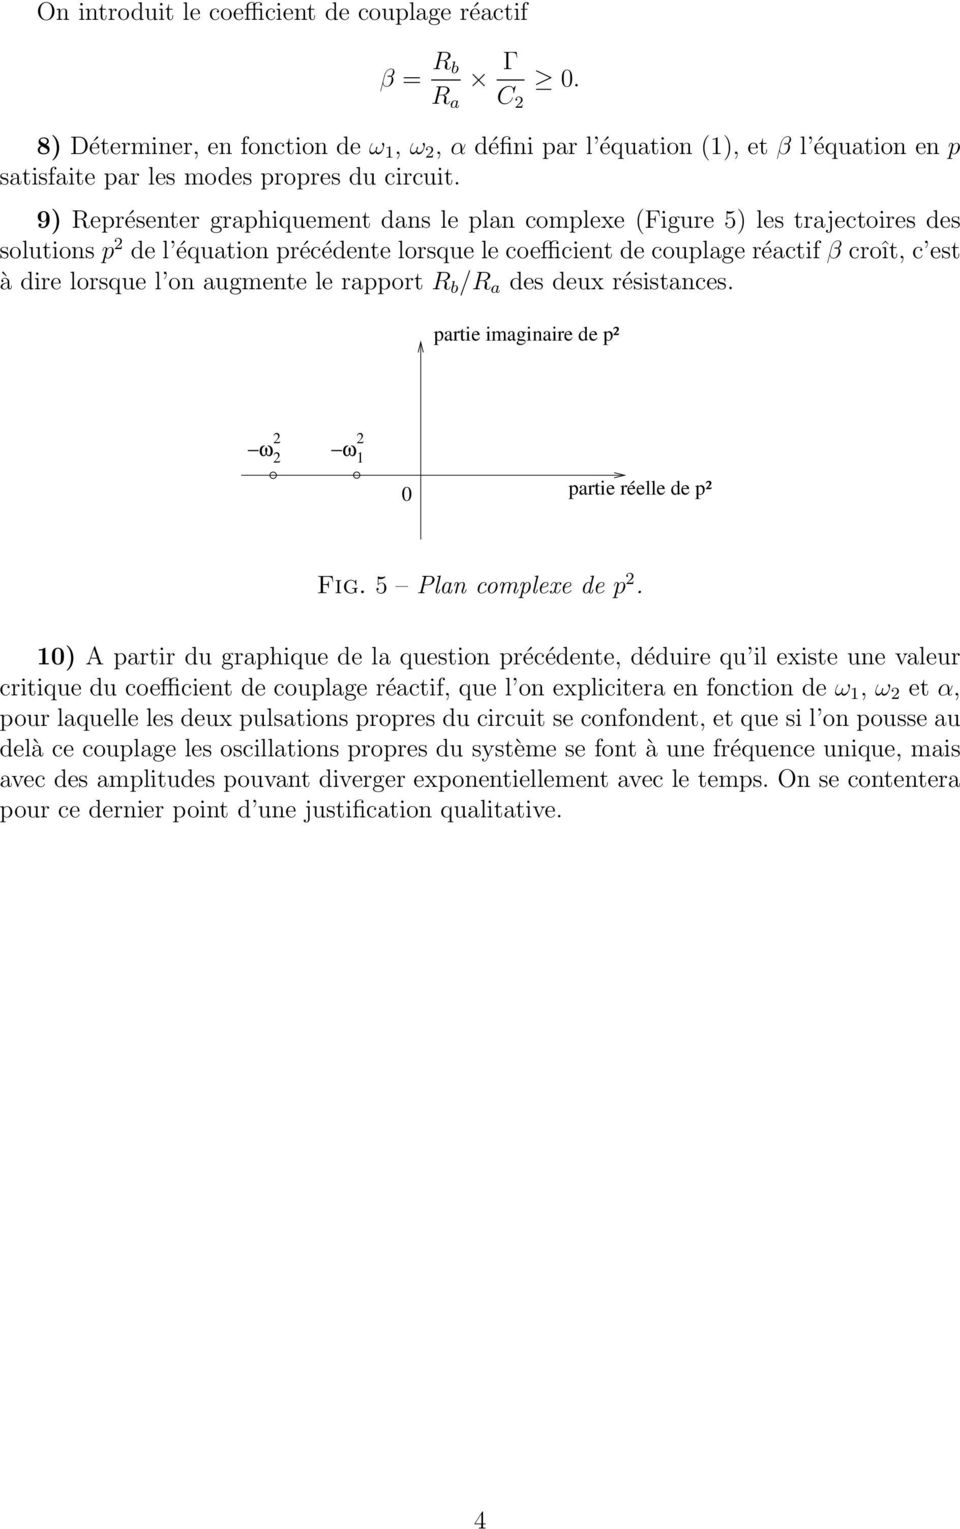 9) Représenter graphiquement dans le plan complexe (Figure 5) les trajectoires des solutions p 2 de l équation précédente lorsque le coefficient de couplage réactif β croît, c est à dire lorsque l on